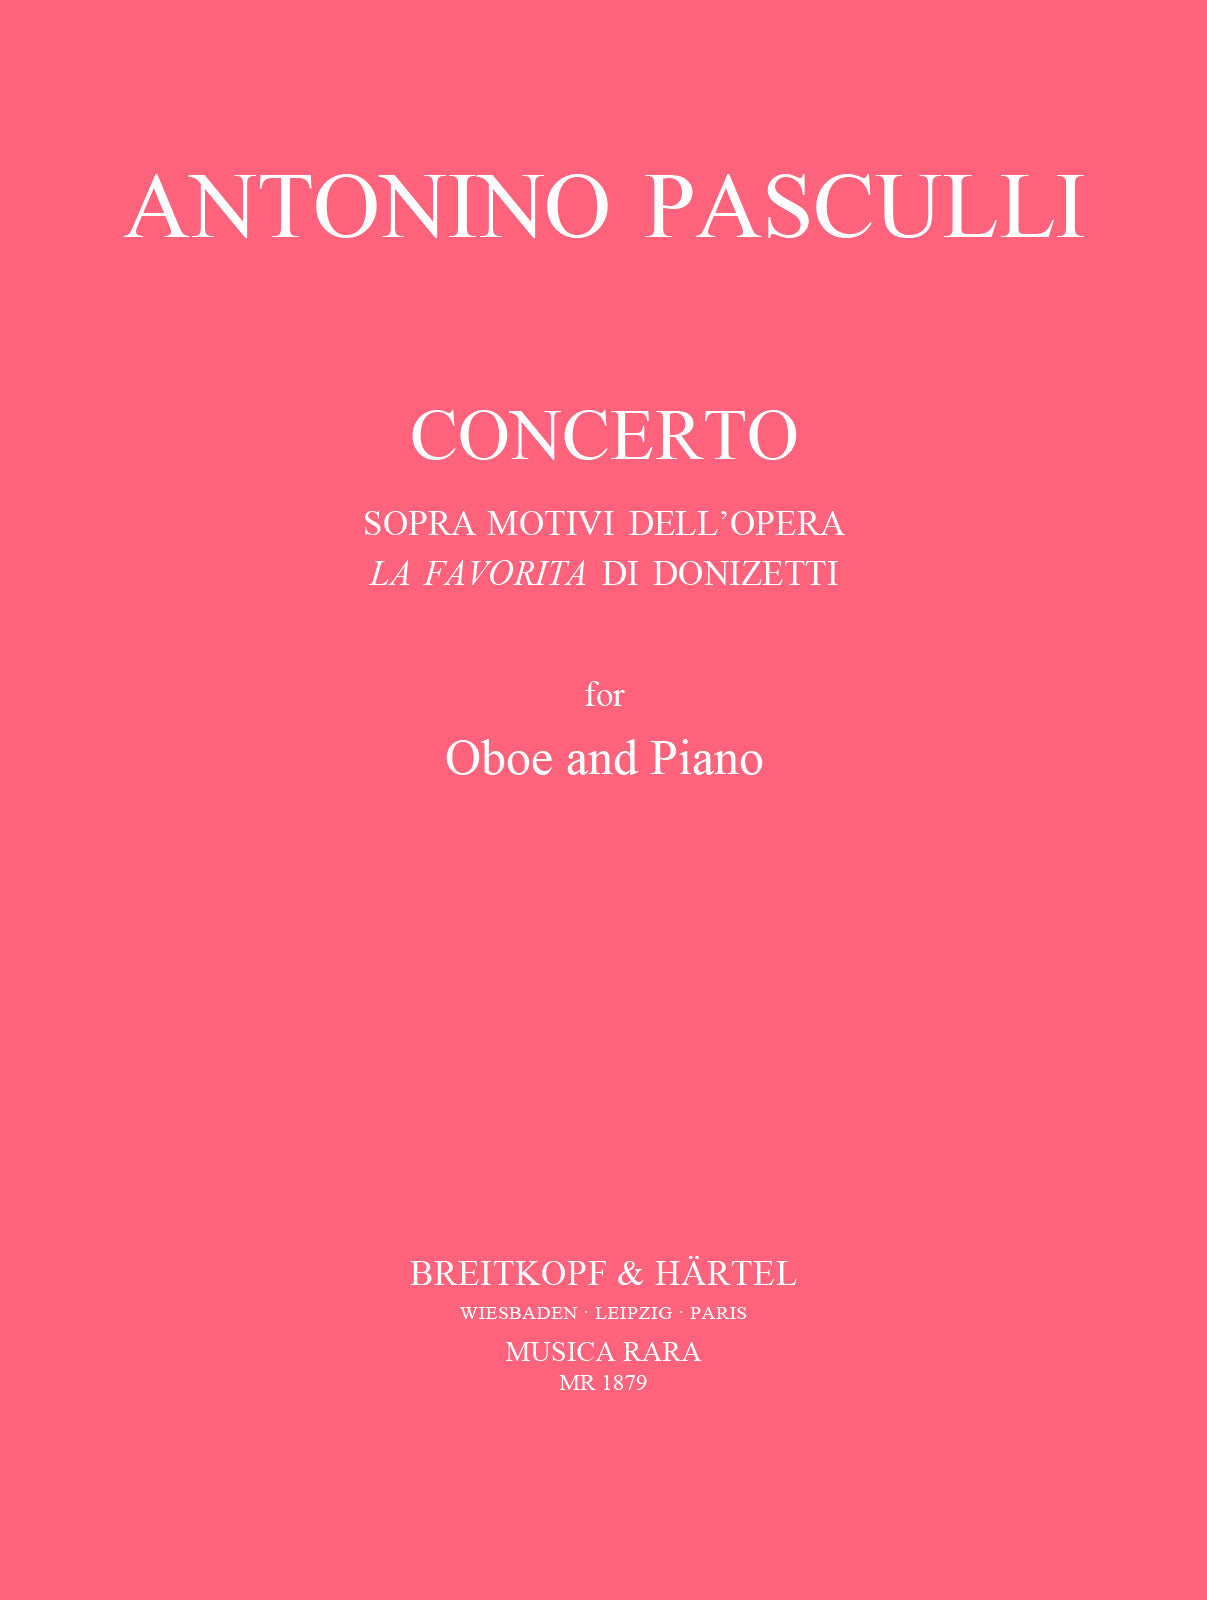 Pasculli: Oboe Concerto on themes from Donizetti's 'La Favorita'